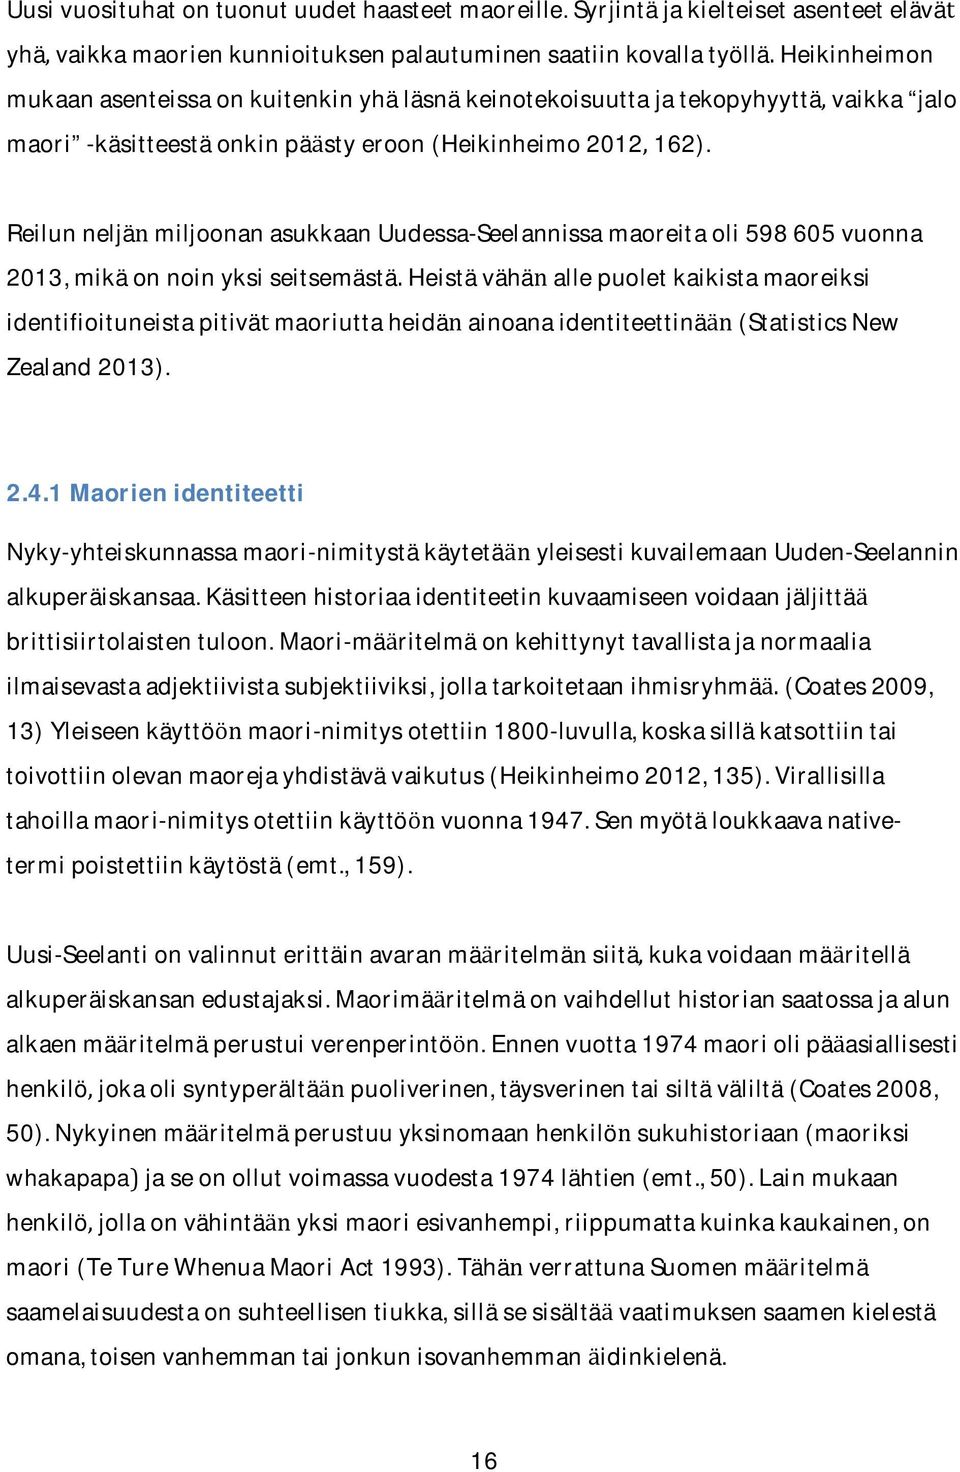 -kasitteestaonkinpa styeroon(heikinheimo2012162).